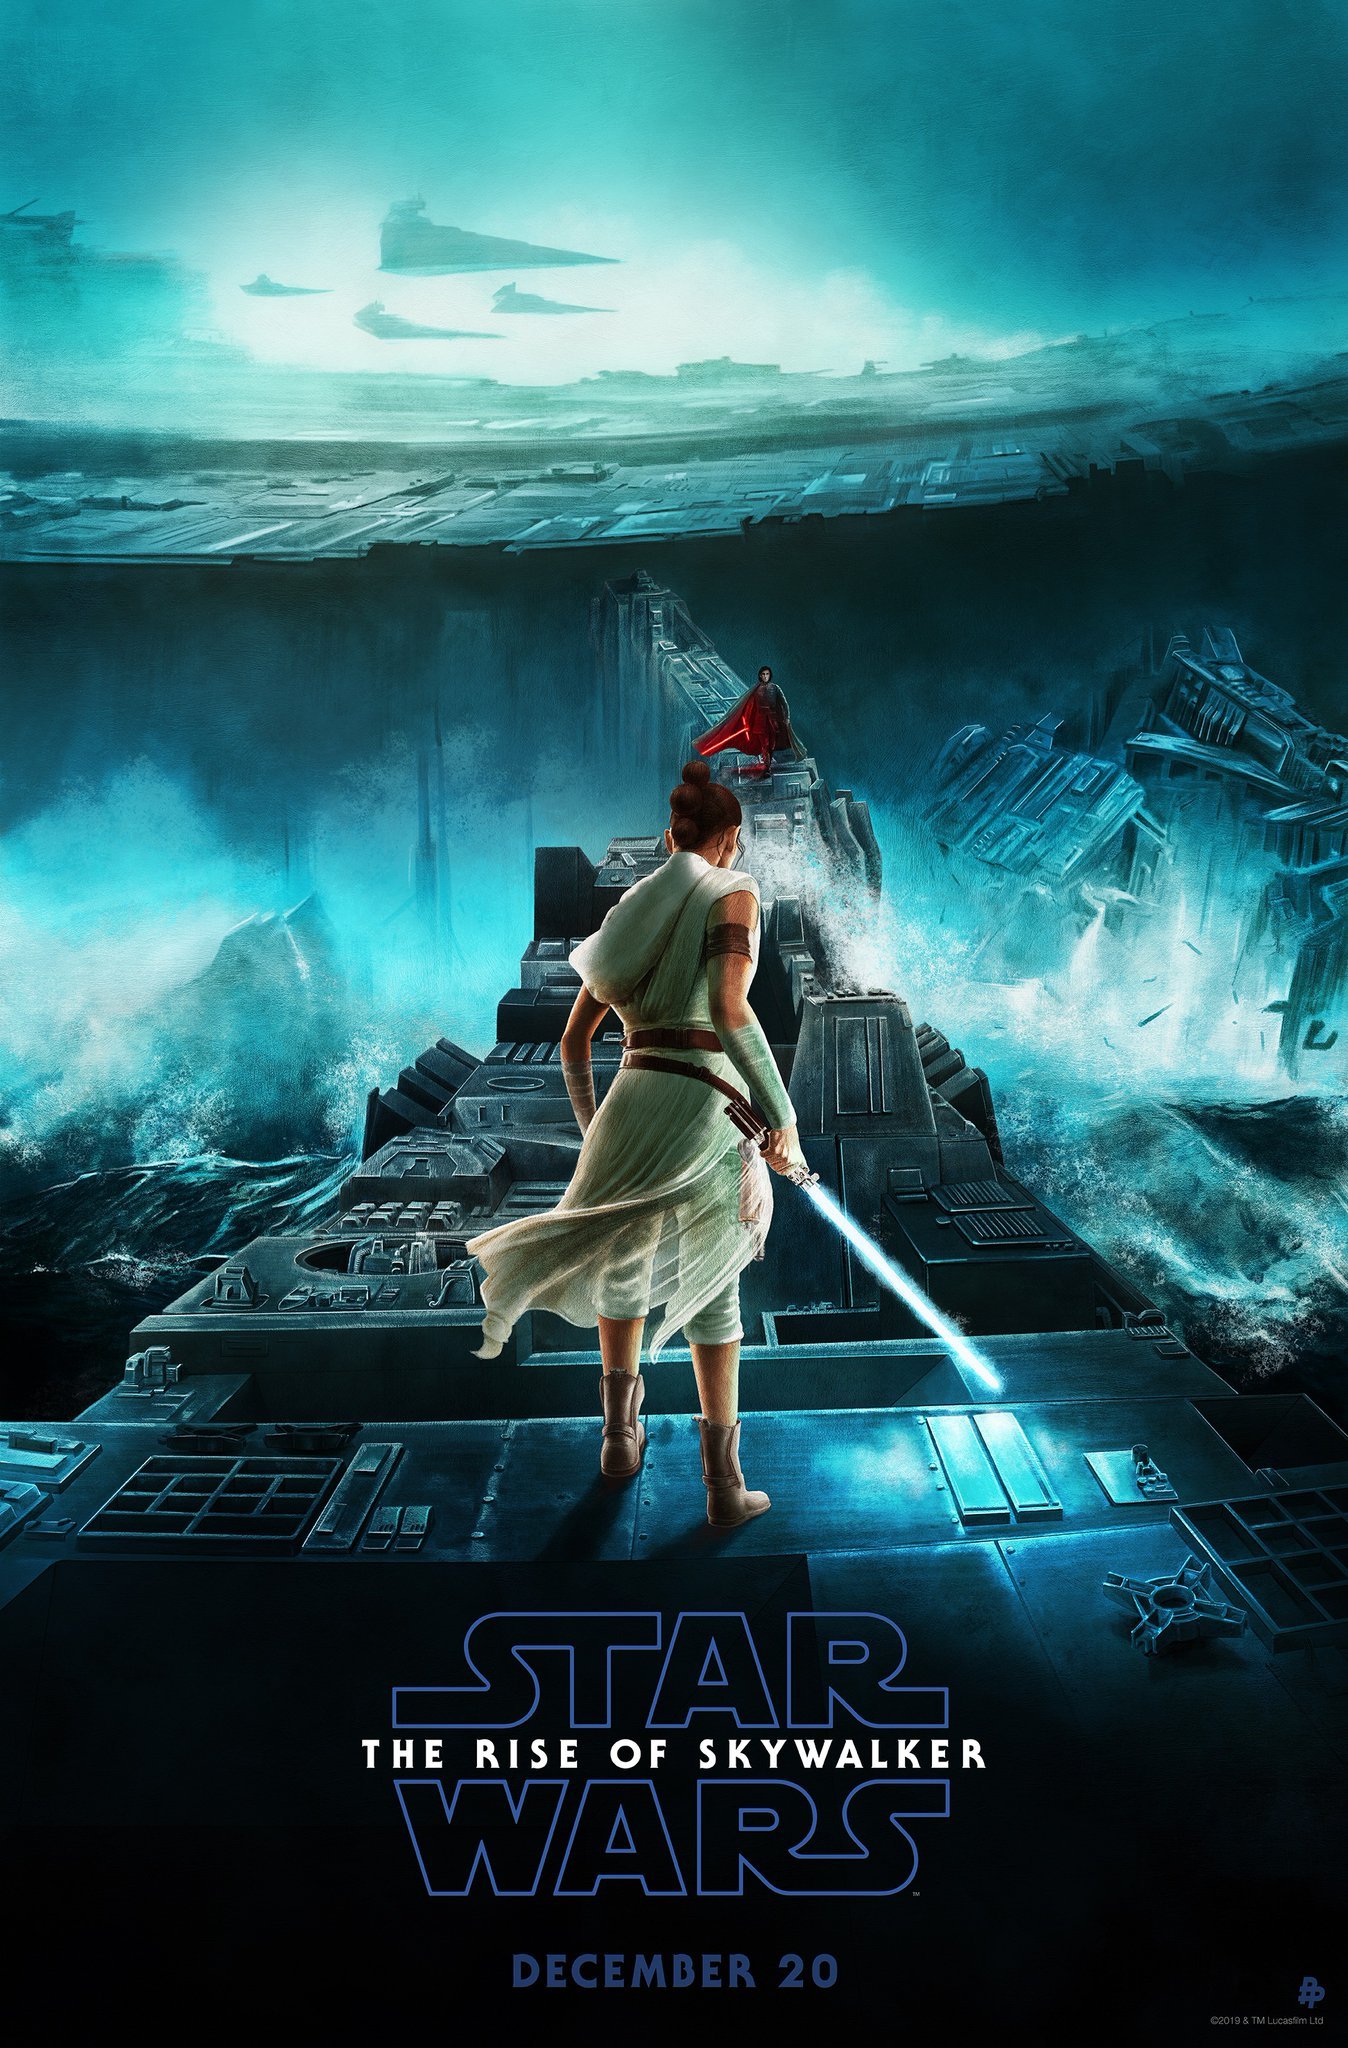 Cartazes individuais dos personagens de 'Star Wars: A Ascensão